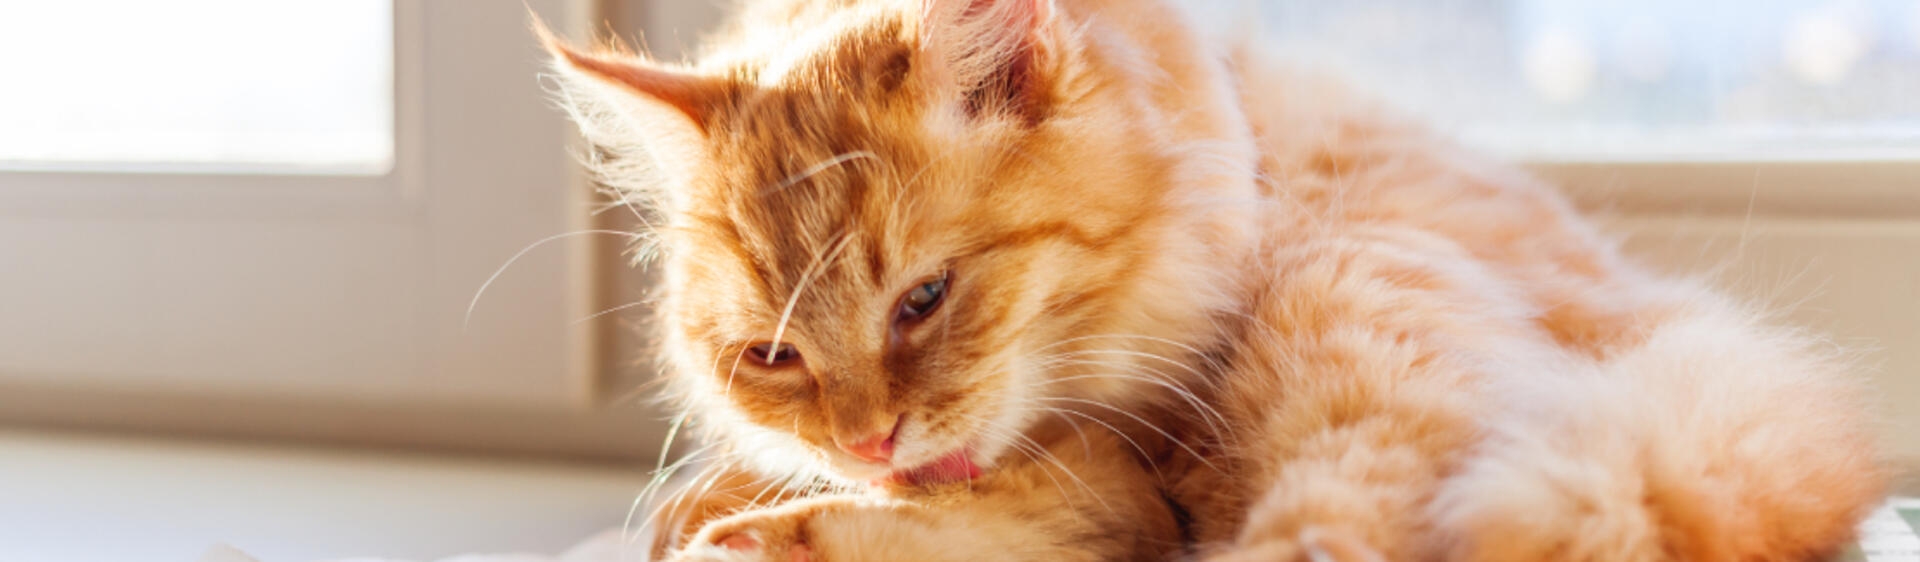 hosszúszőrű vörös cica mosakszik